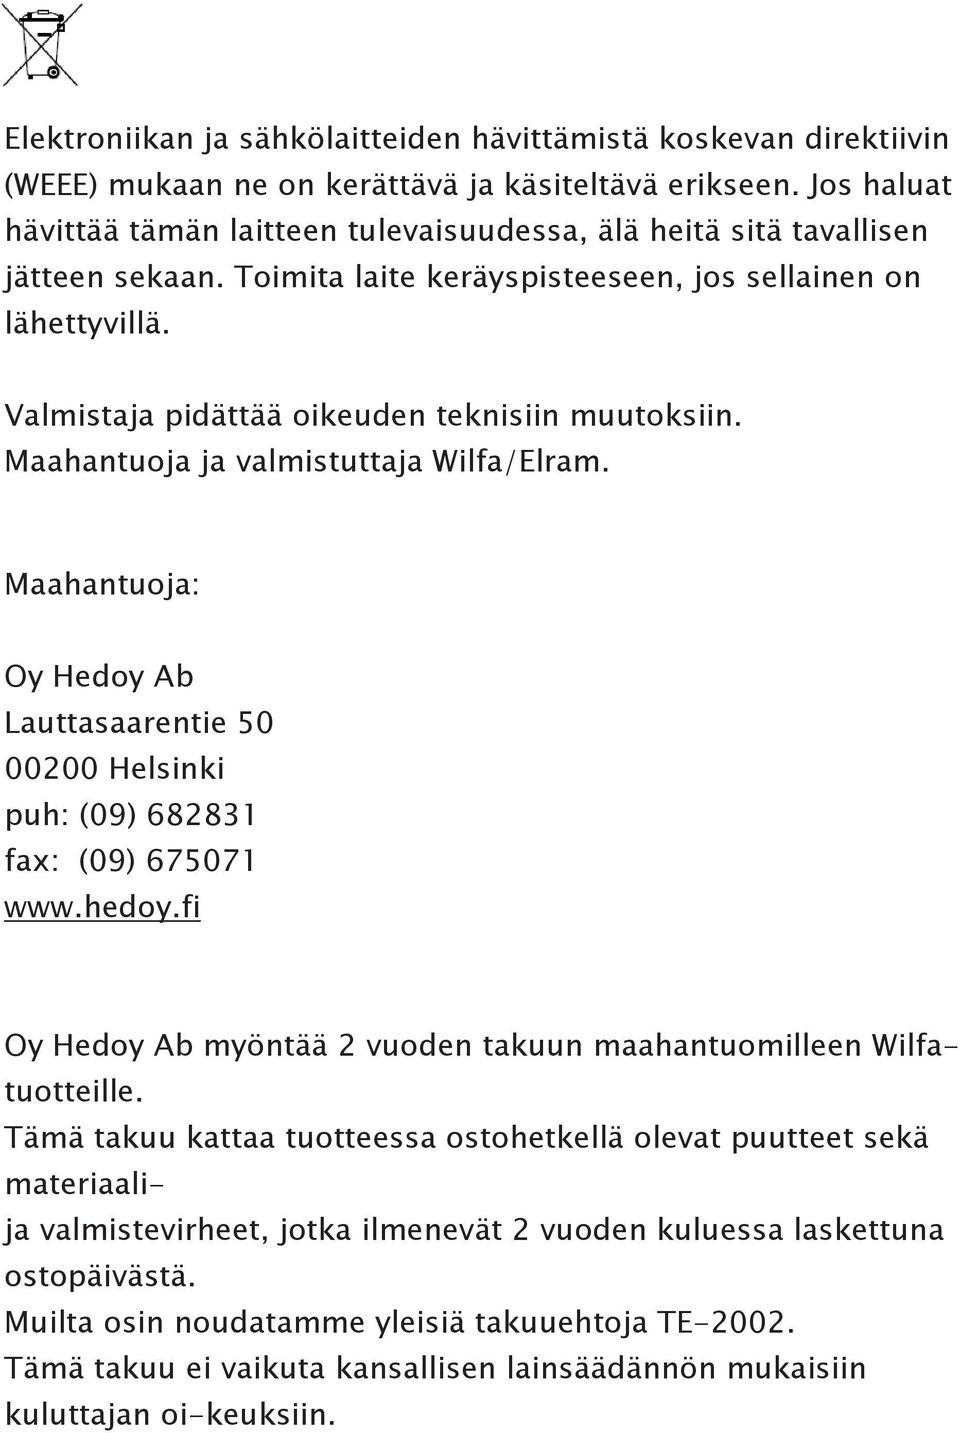 Valmistaja pidättää oikeuden teknisiin muutoksiin. Maahantuoja ja valmistuttaja Wilfa/Elram. Maahantuoja: Oy Hedoy Ab Lauttasaarentie 50 00200 Helsinki puh: (09) 682831 fax: (09) 675071 www.hedoy.